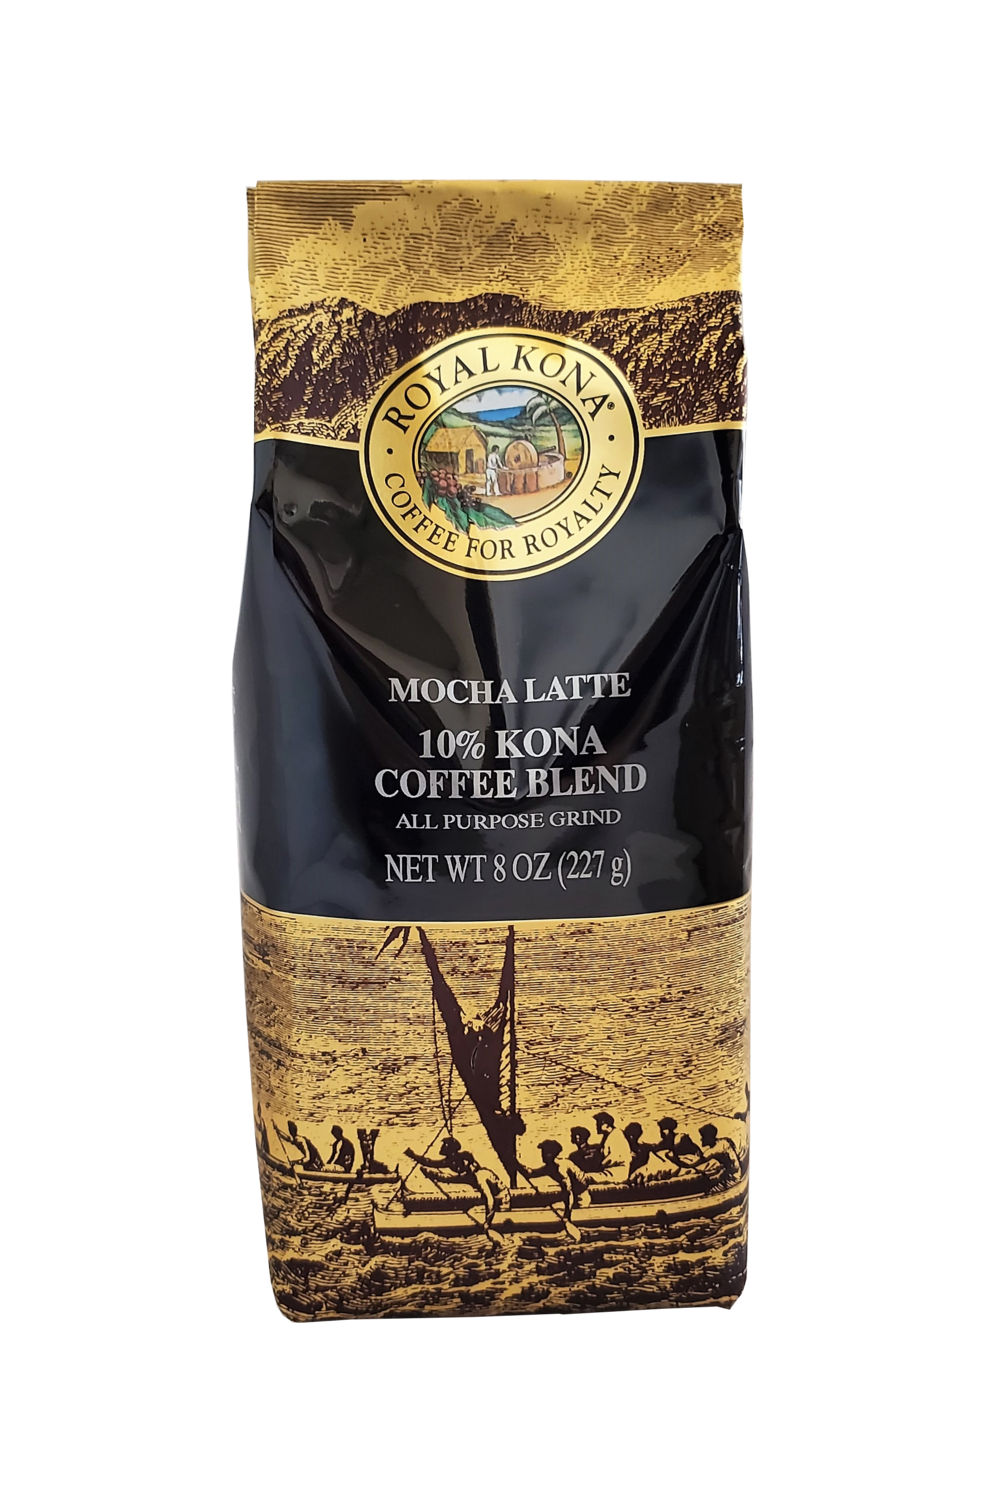 Royal Kona Coffee - Mocha Latte 10% Kona Coffee Blend 8 oz